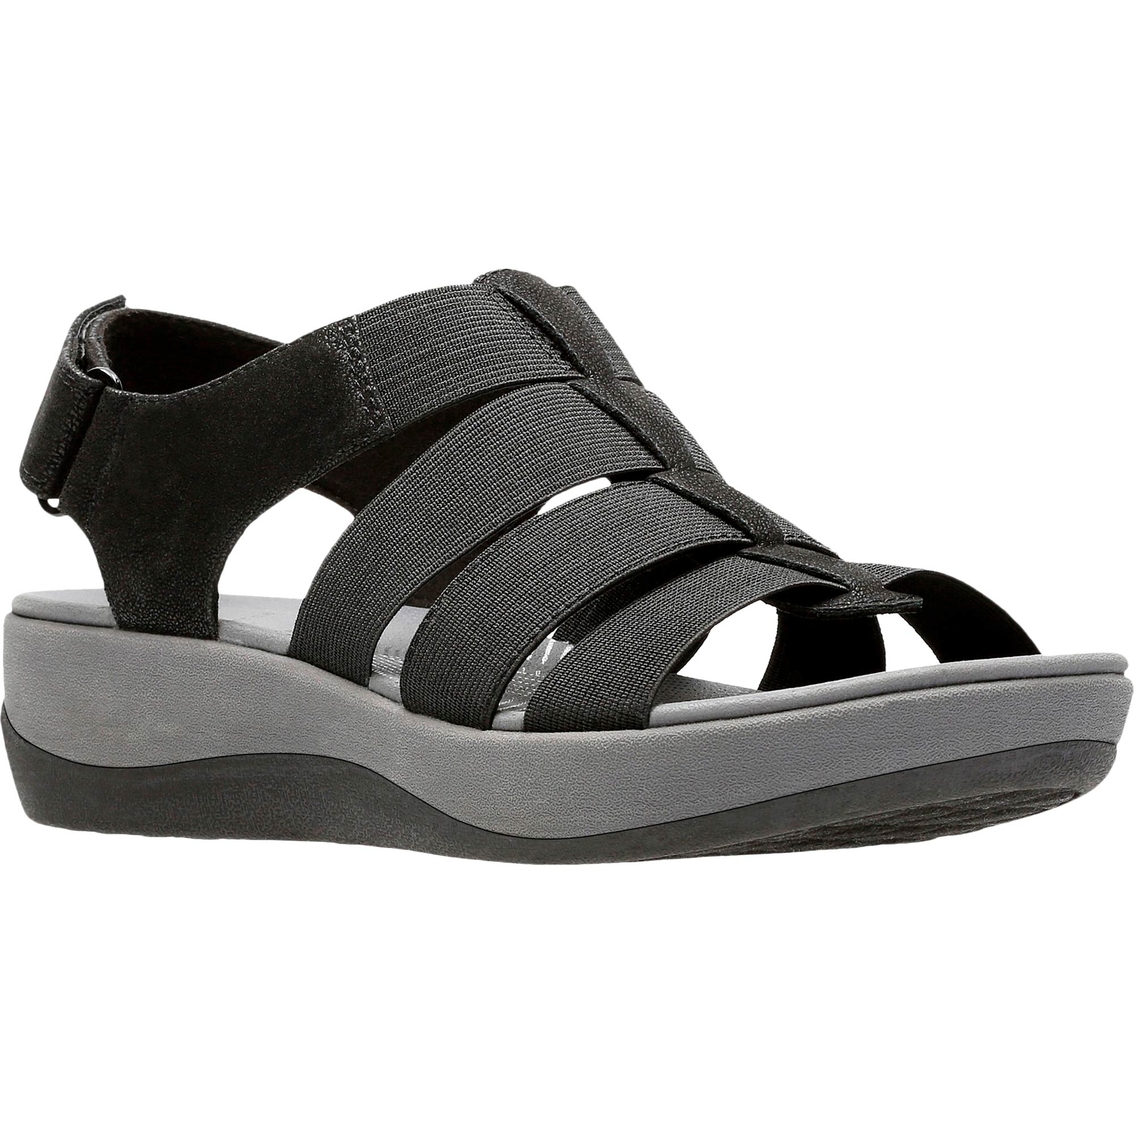 Clarks Arla Shaylie Cloudstepper Strap Sandals | Sandals | Shoes | Shop ...